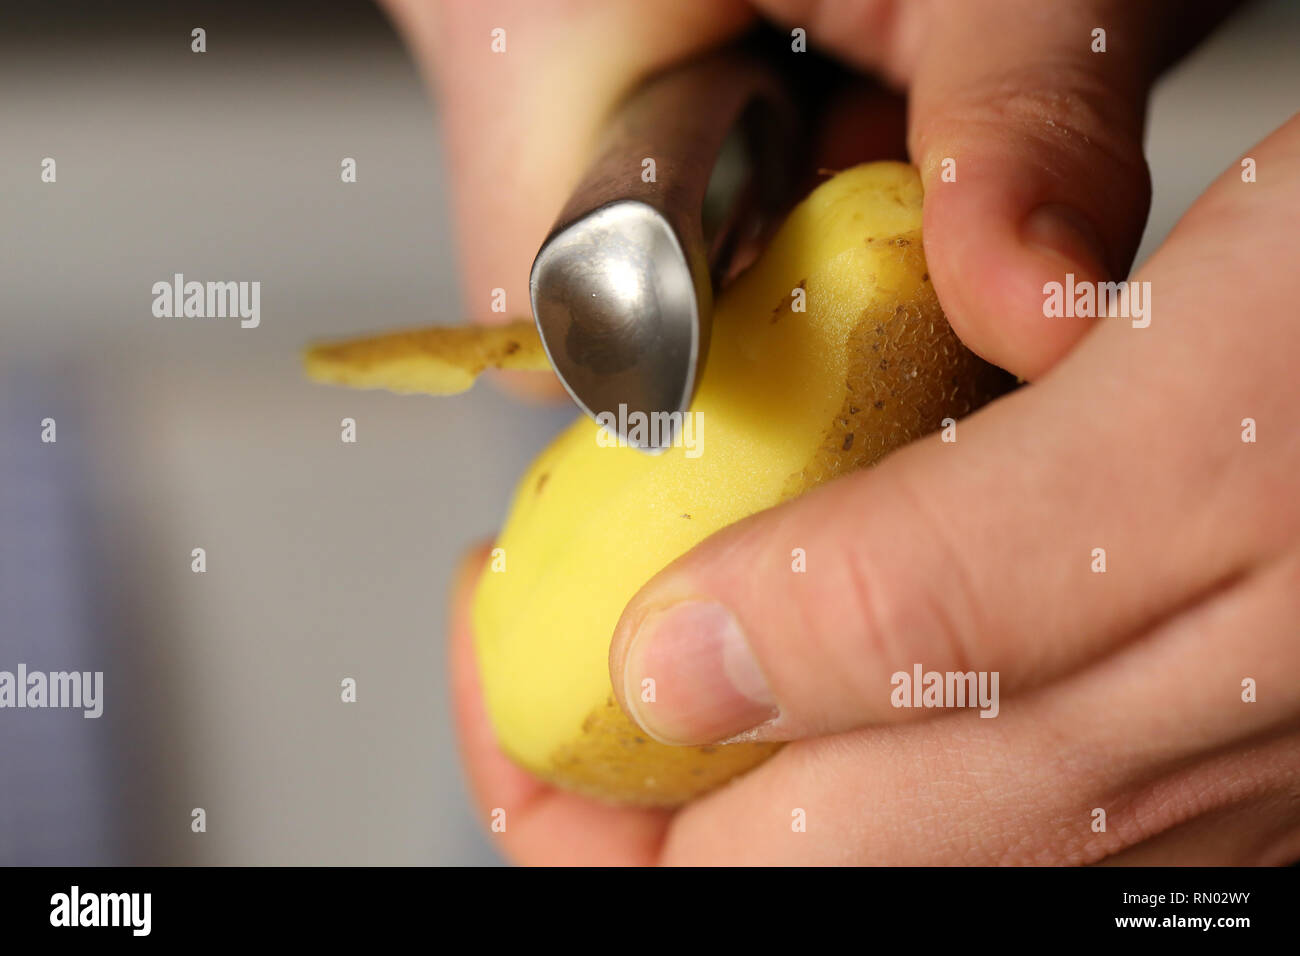 Un uomo pelare patate metallico con un pelapatate. È possibile vedere le mani, una patata e sbucciatore in questa foto. Immagine a colori. Primo piano. Foto Stock